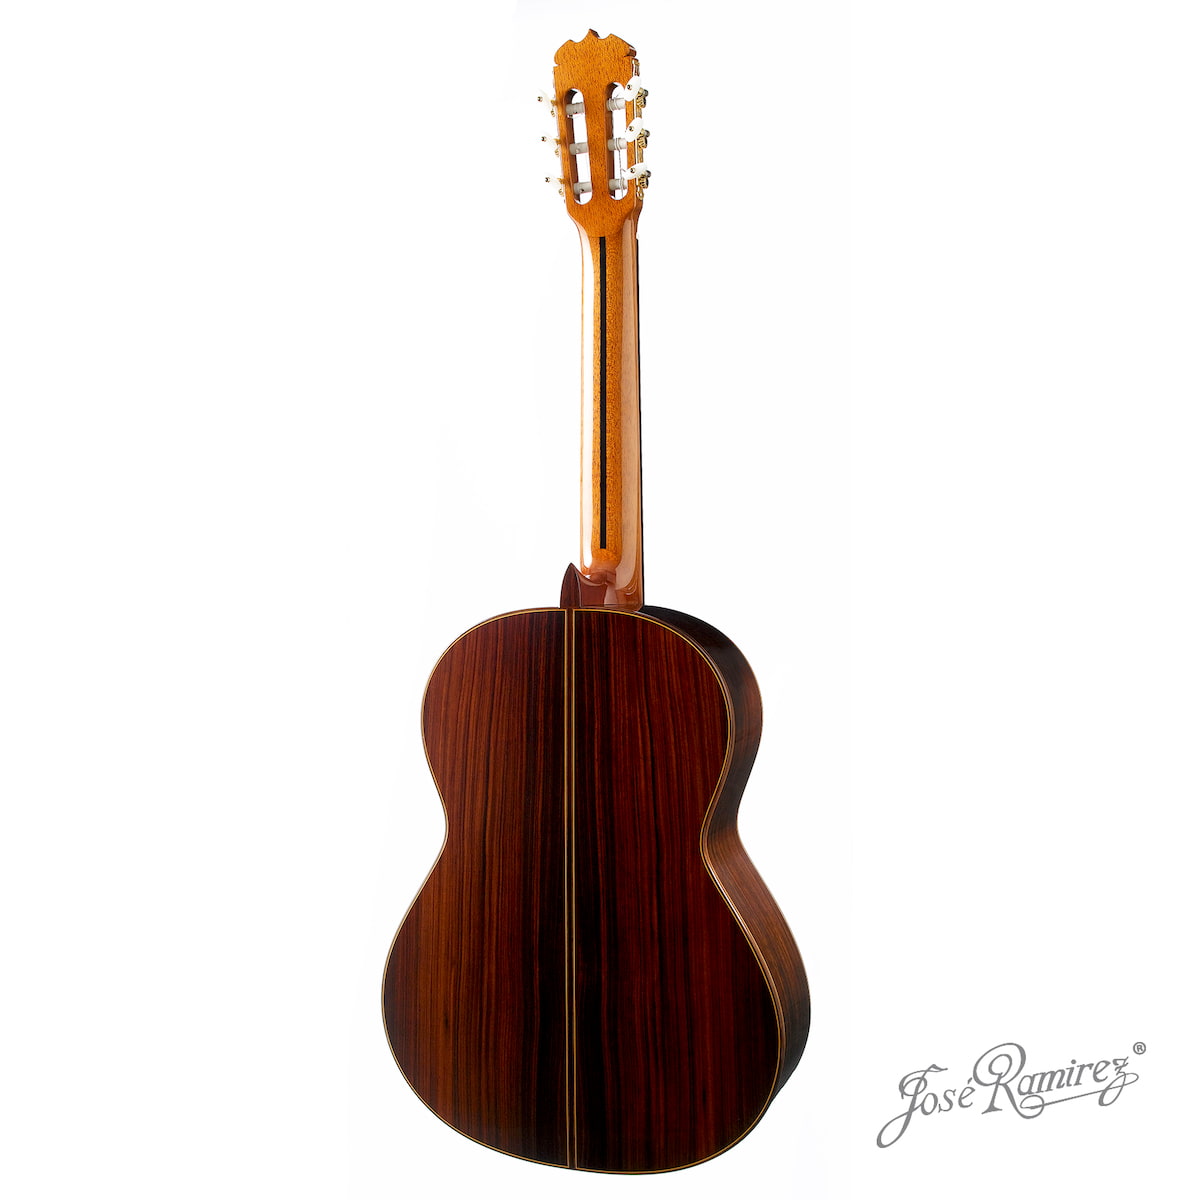 Suelo de la guitarra artesanal tradicional Ramírez